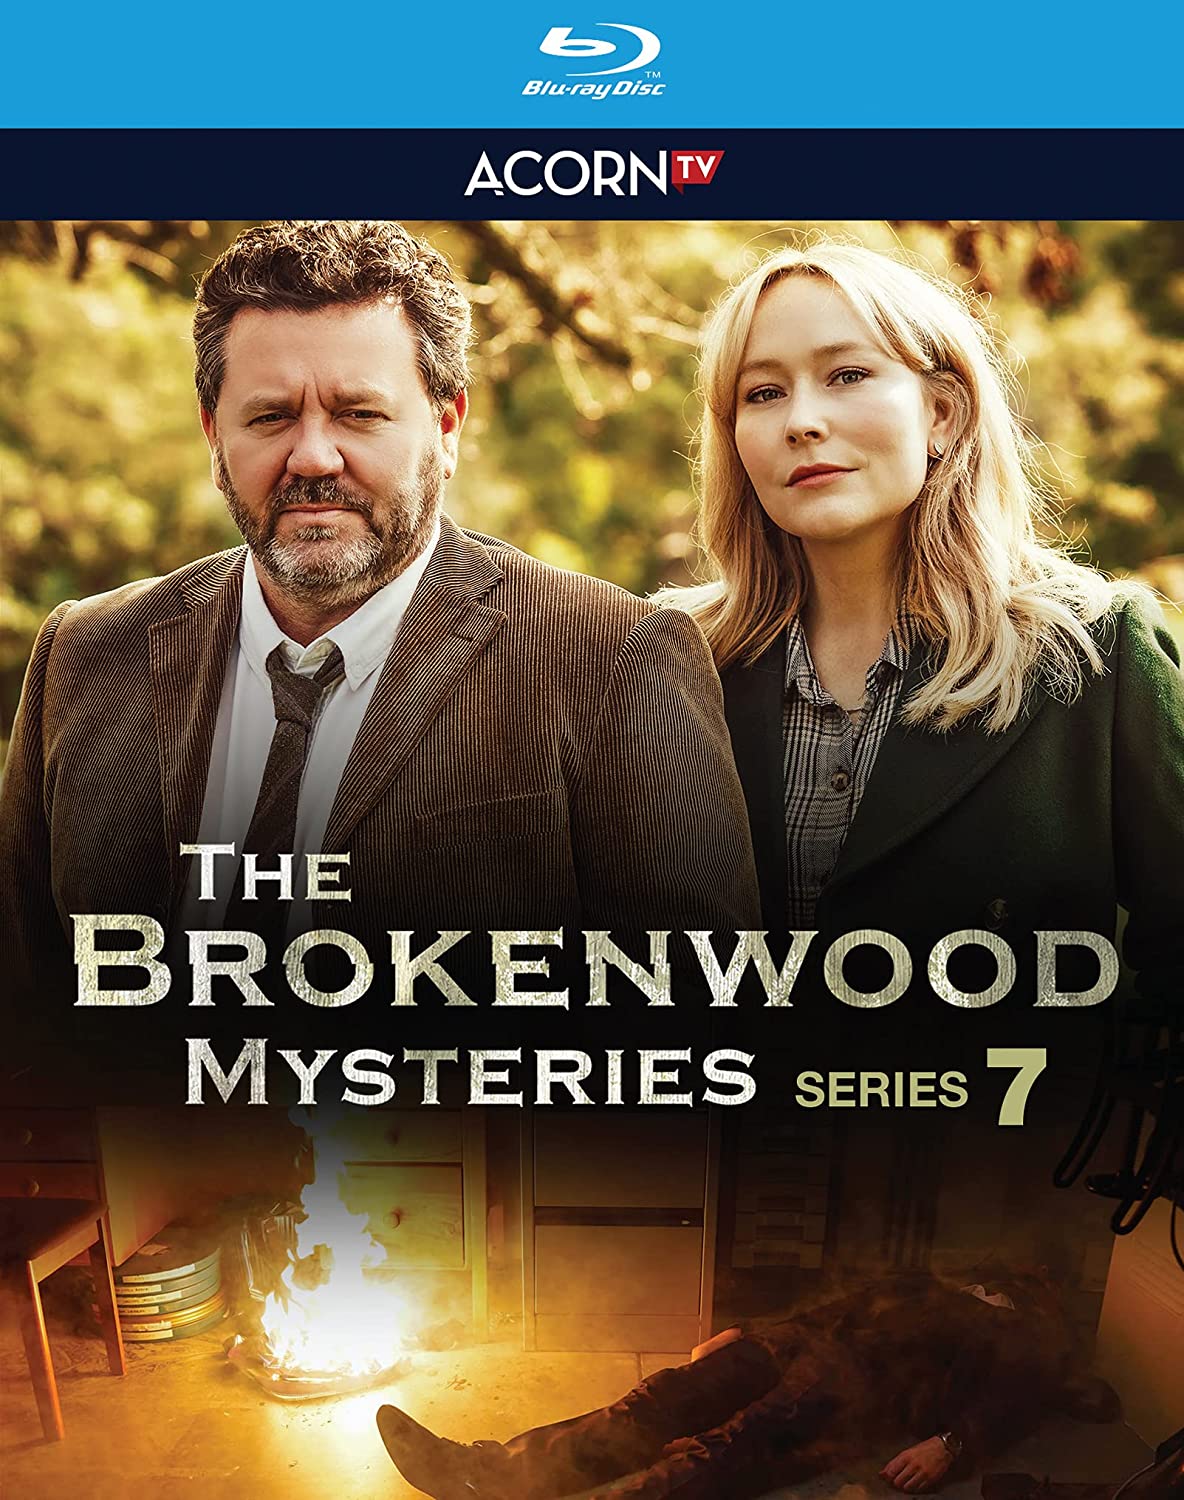 Brokenwood Mysteries: Series 7 [Blu-ray] cover art